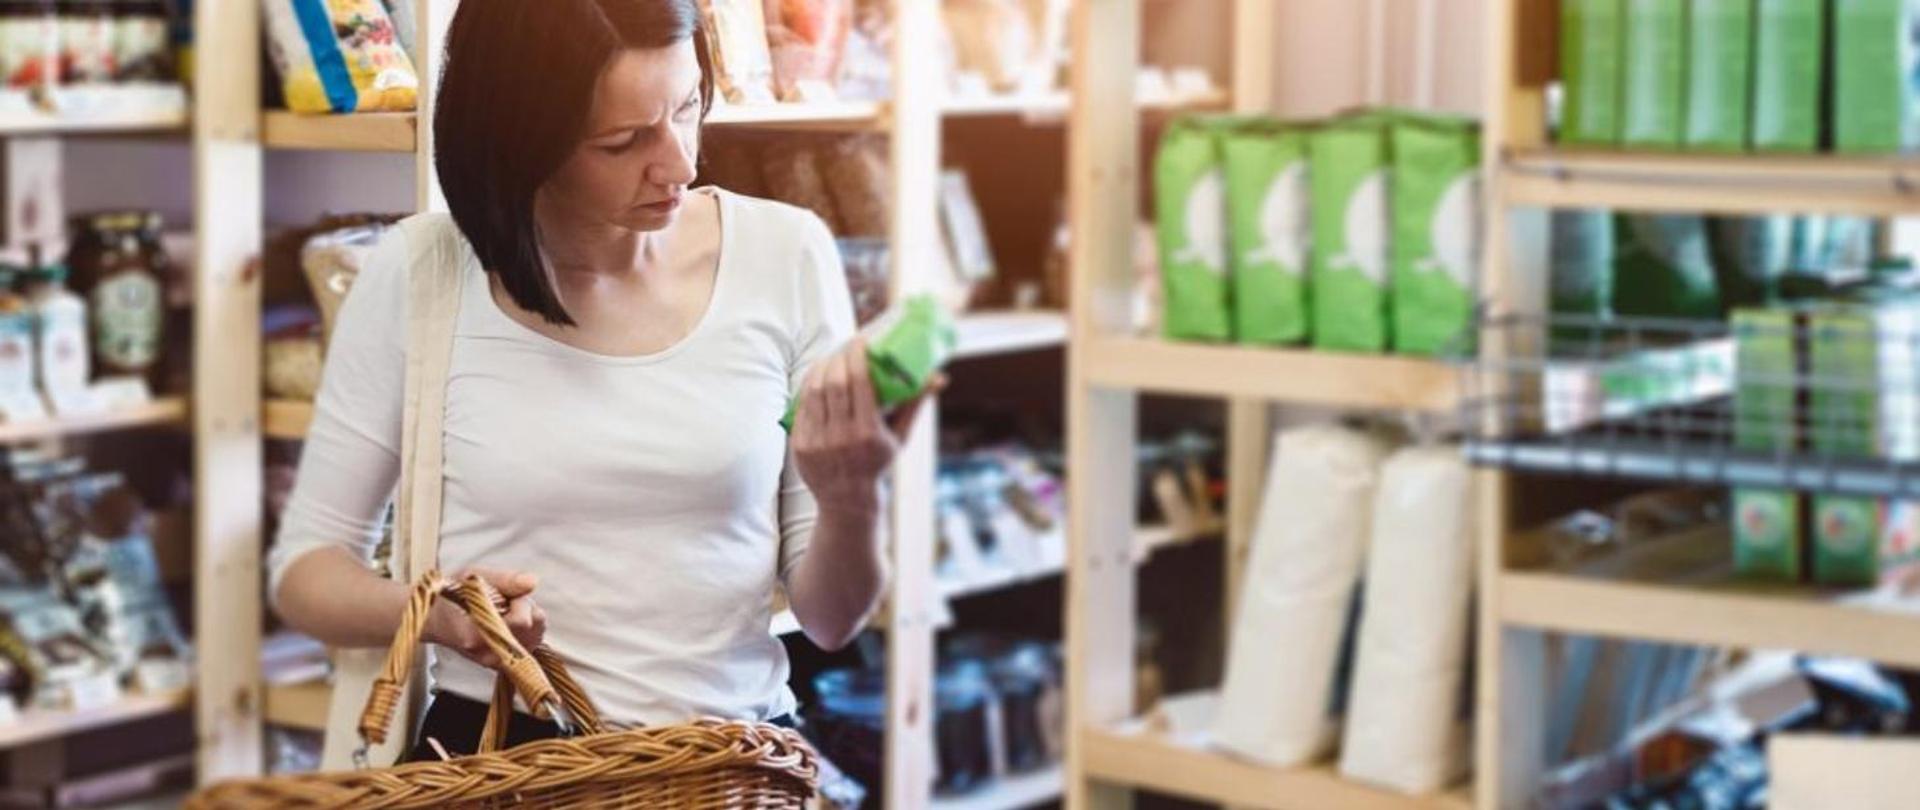 Na grafice widzimy kobietę znajdującą się najprawdopodobniej w sklepie. Ma krótkie włosy, biała koszulkę oraz koszyk w reku. W drugiej ręce trzyma produkt w zielonym opakowaniu najprawdopodobniej czyta jego skład. 